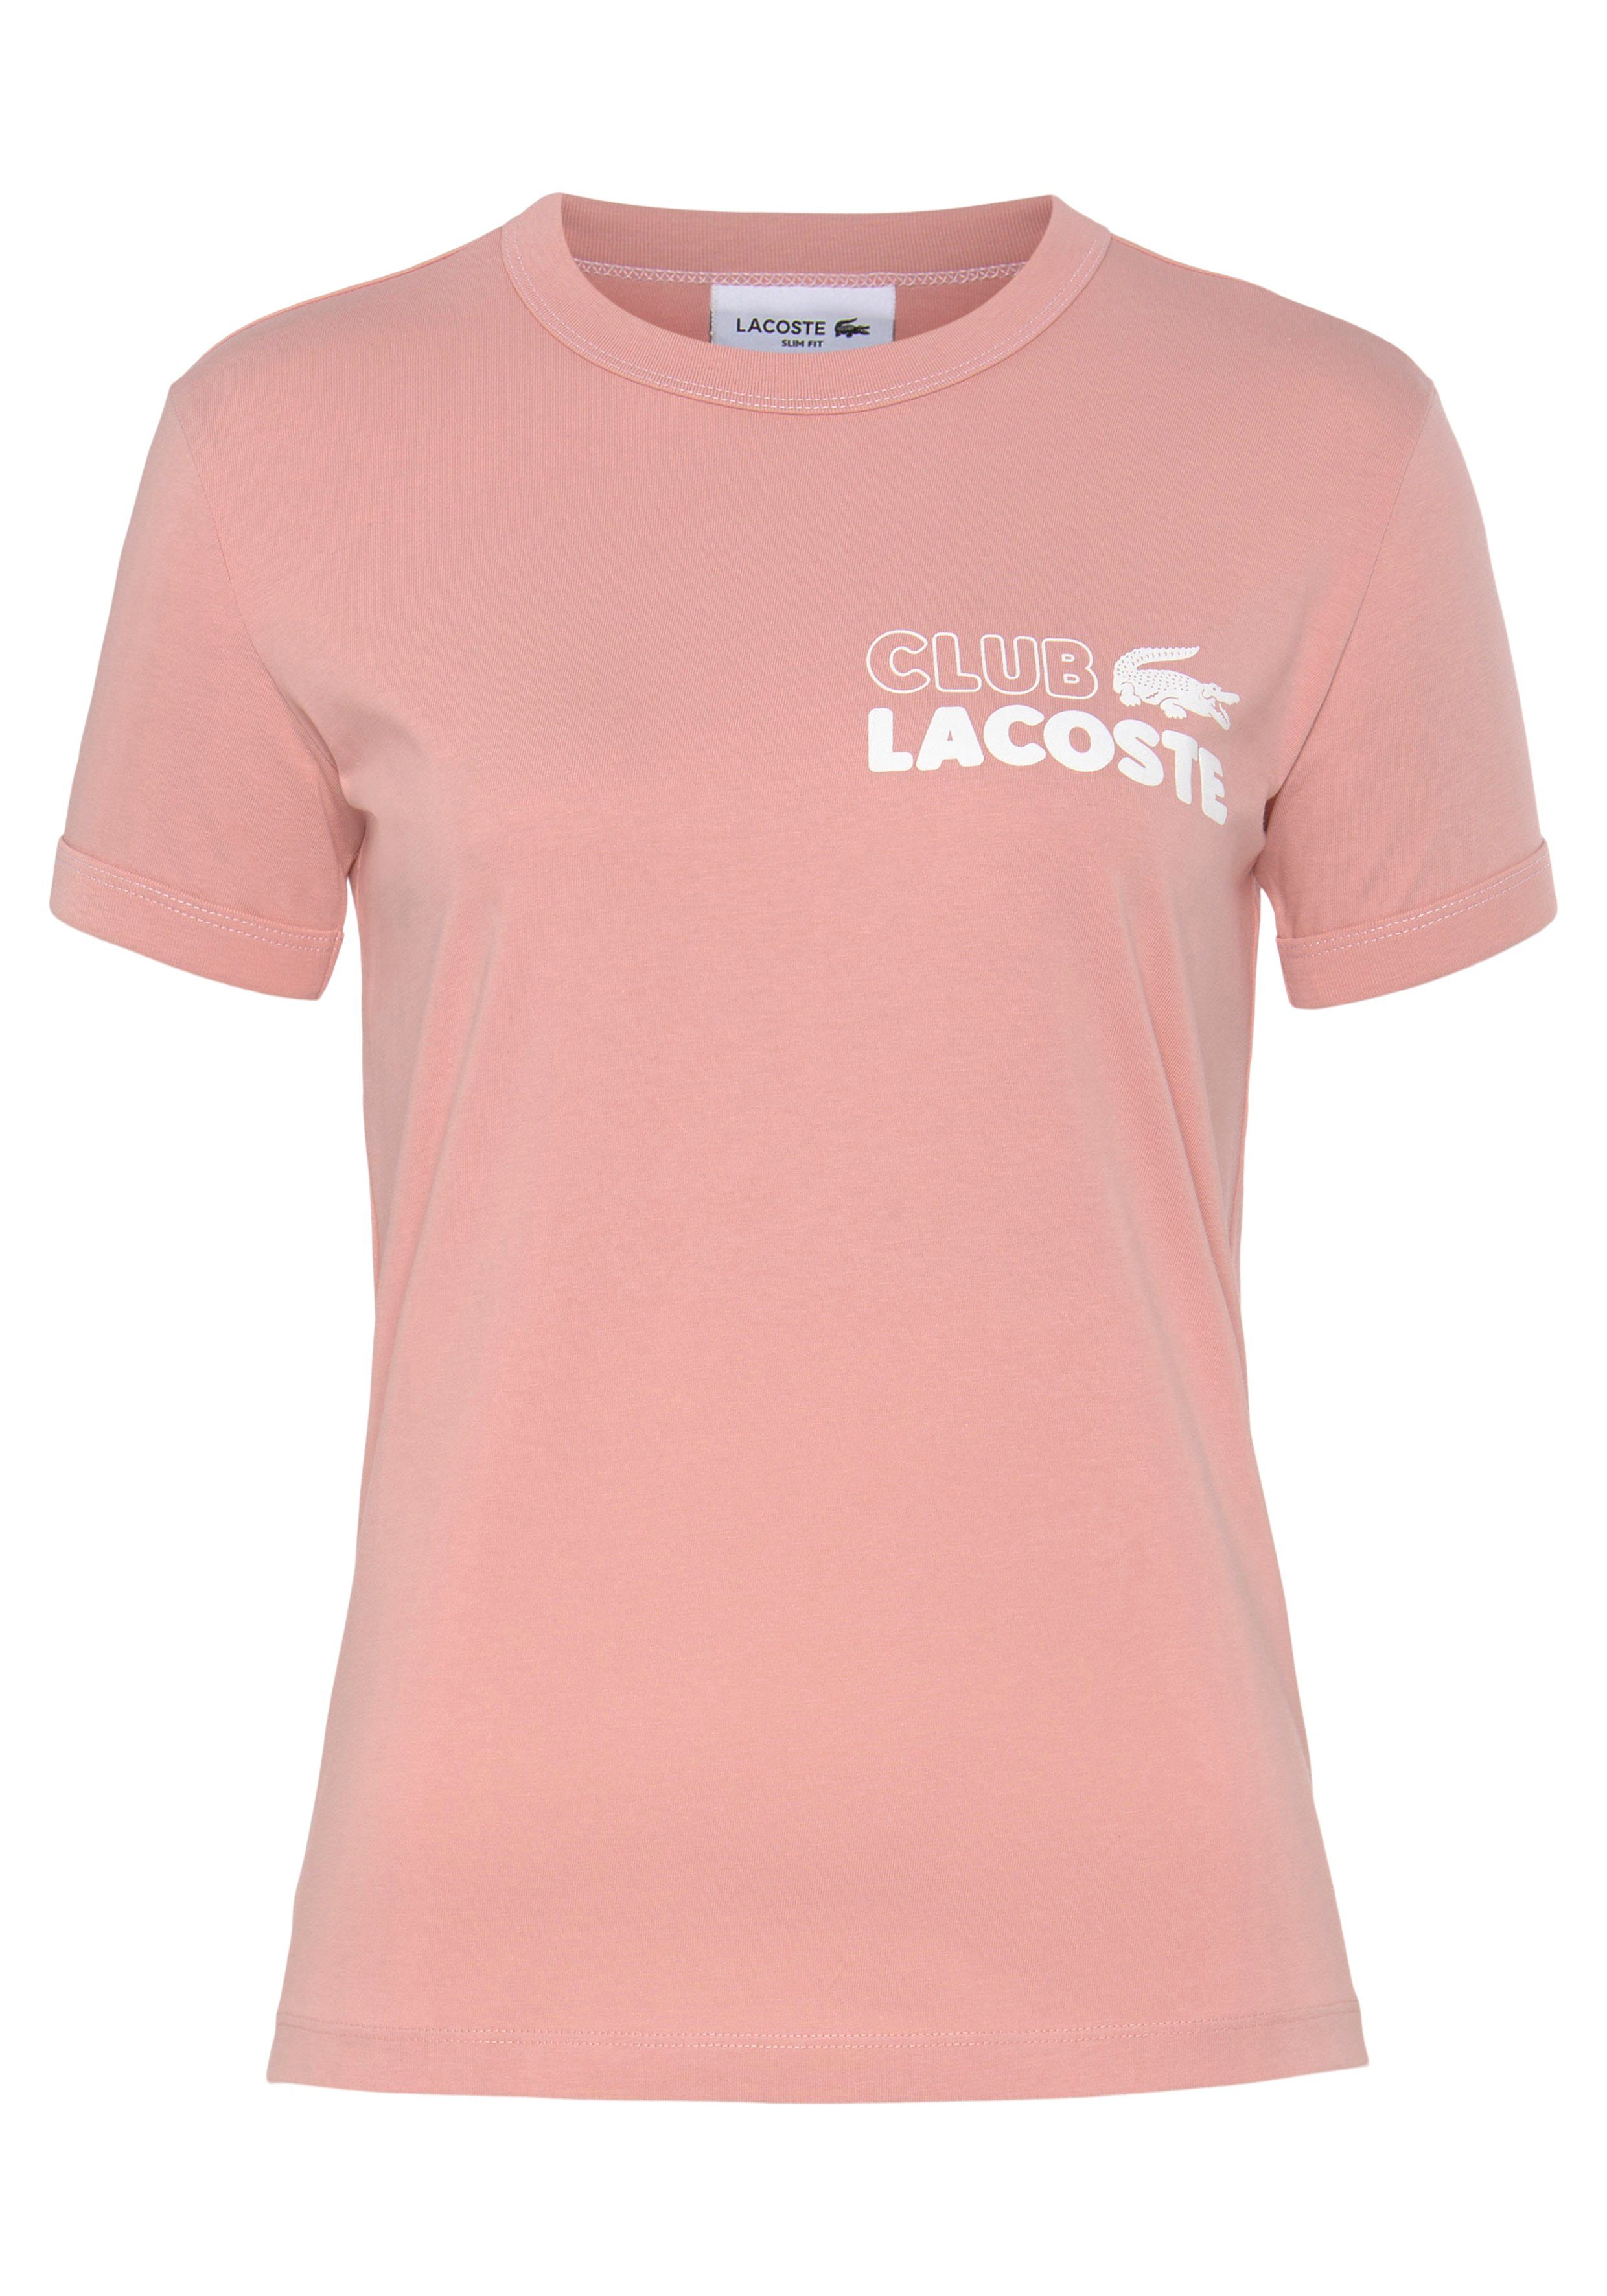 Lacoste Logoprägung auf Brust T-Shirt mit der